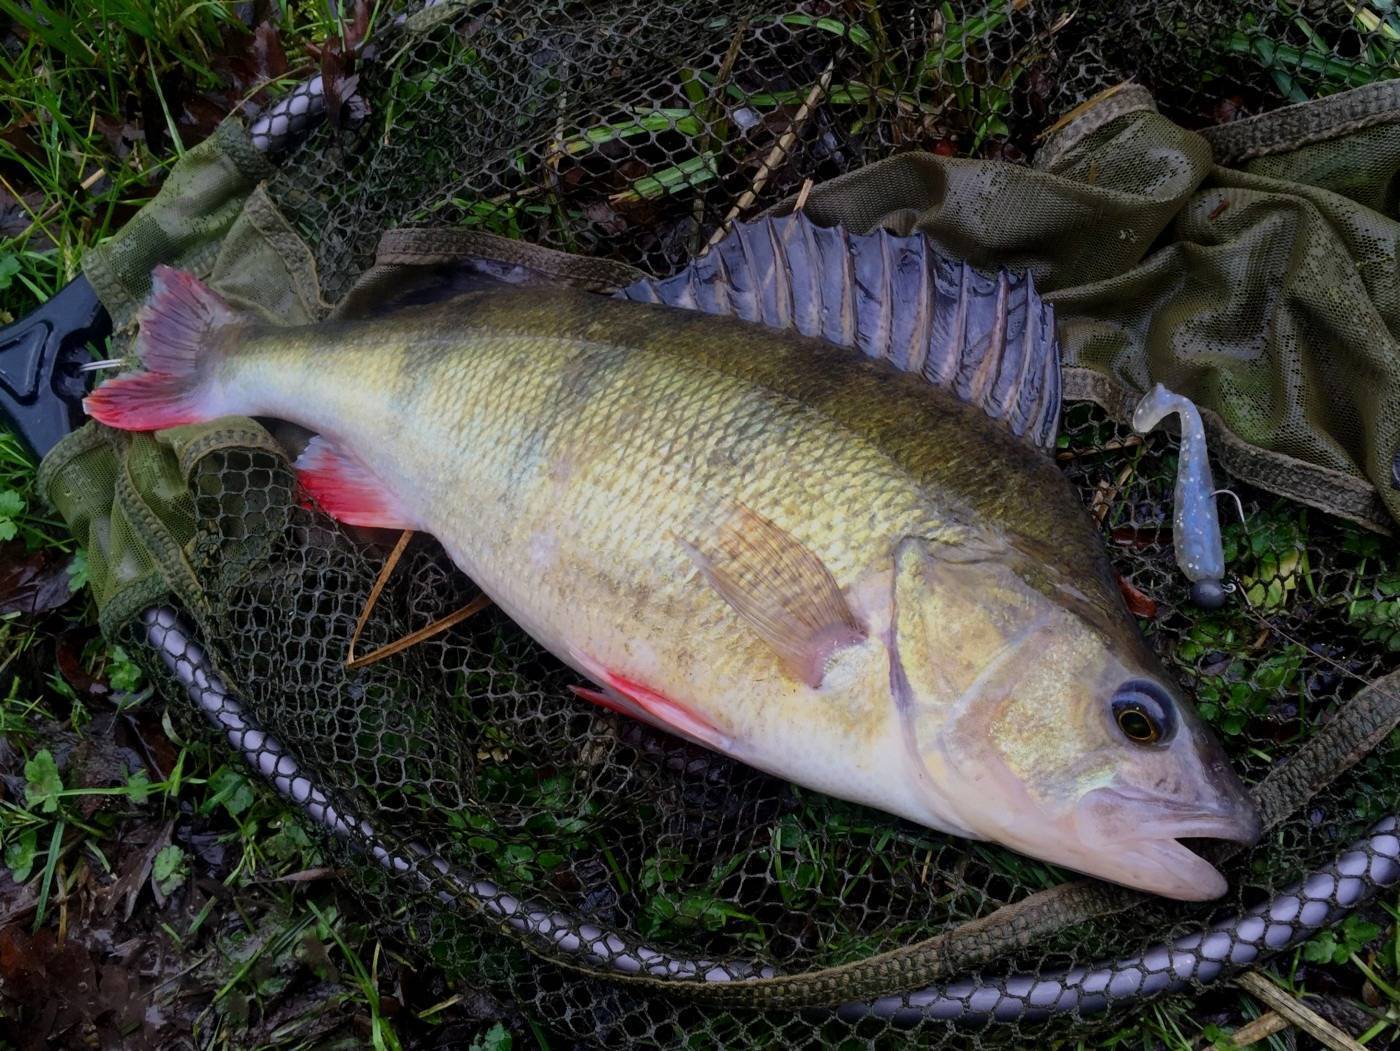 Рыбалка в волгодонске: ловля судака в его окрестностях, пруд грачики и другие рыболовные места